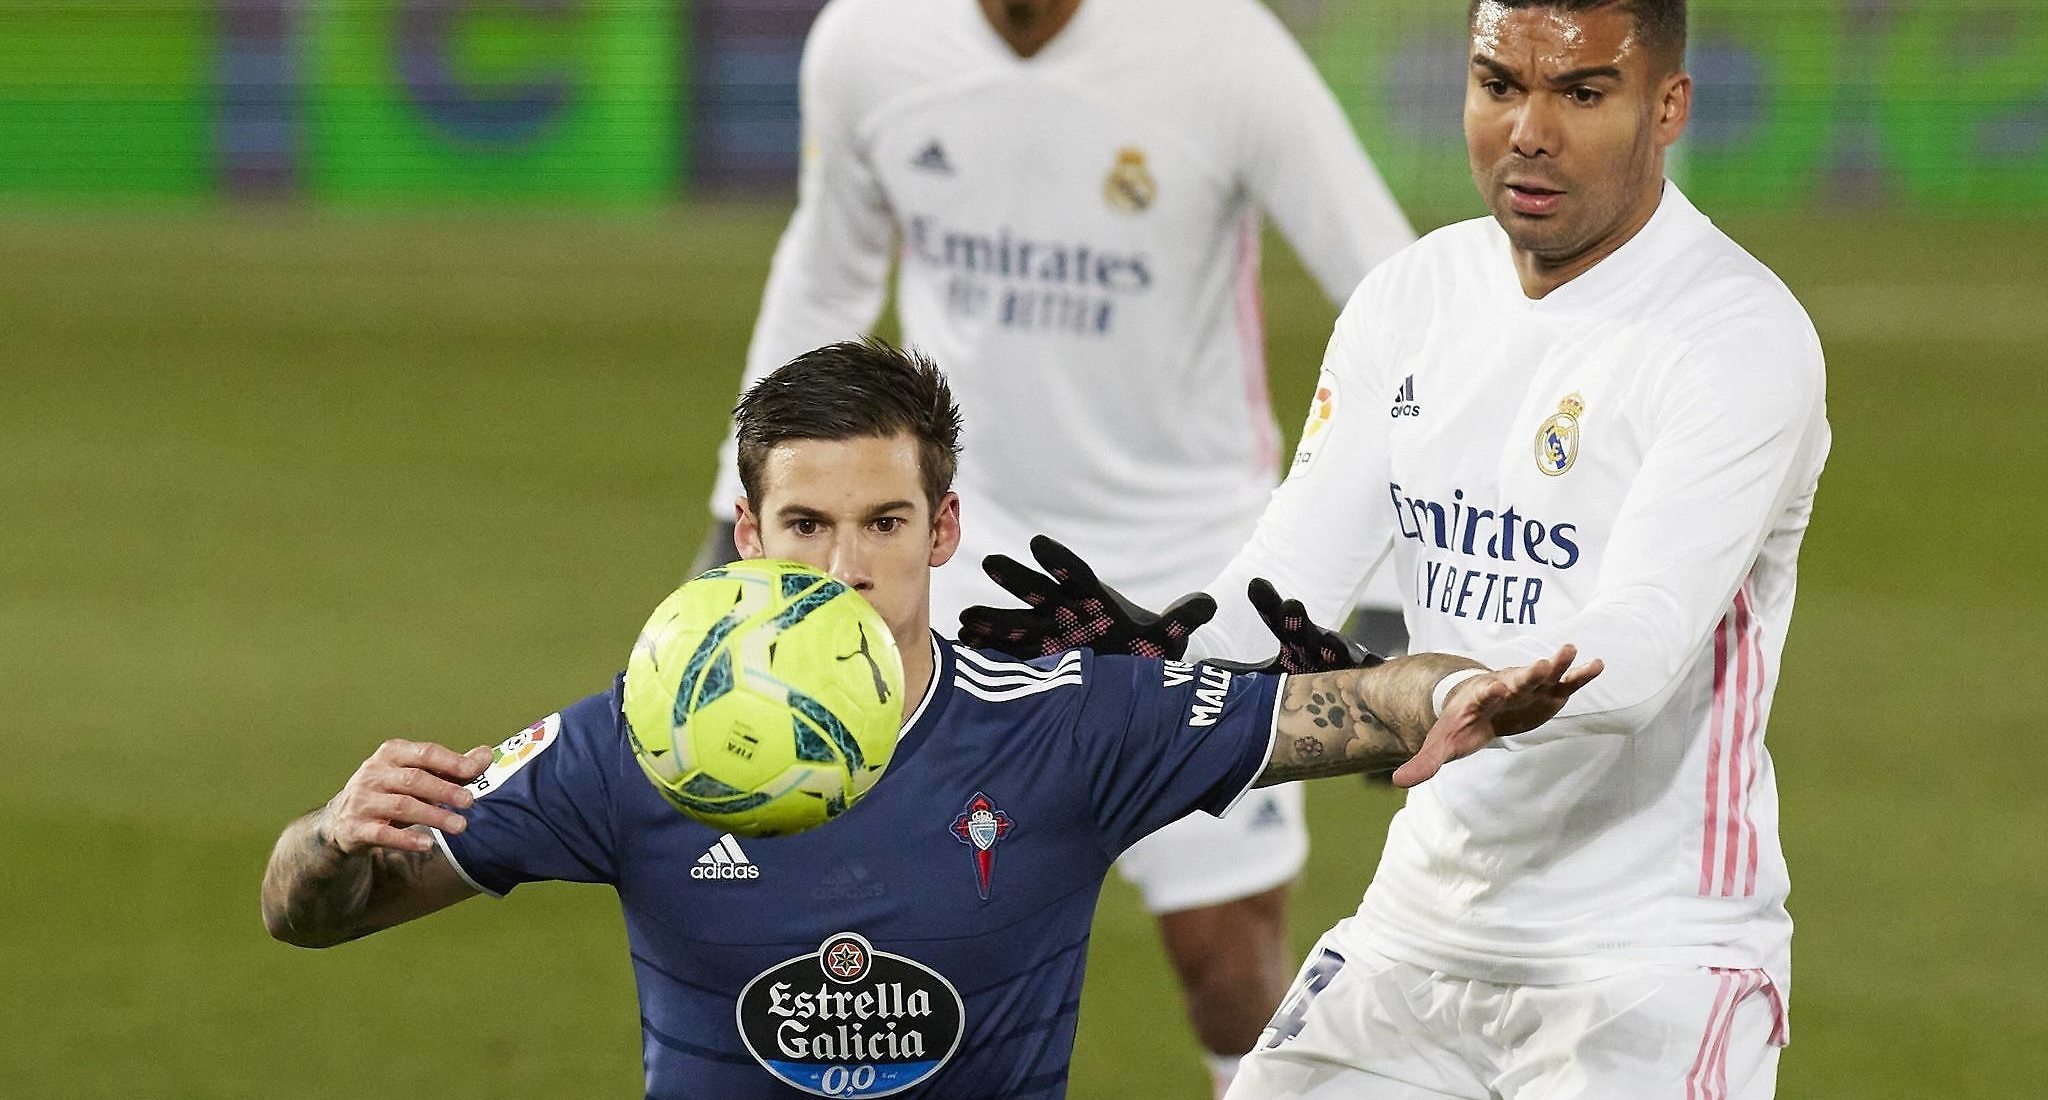 Previa Celta de Vigo – Real Madrid | El Real Madrid, a seguir luchando por estar arriba